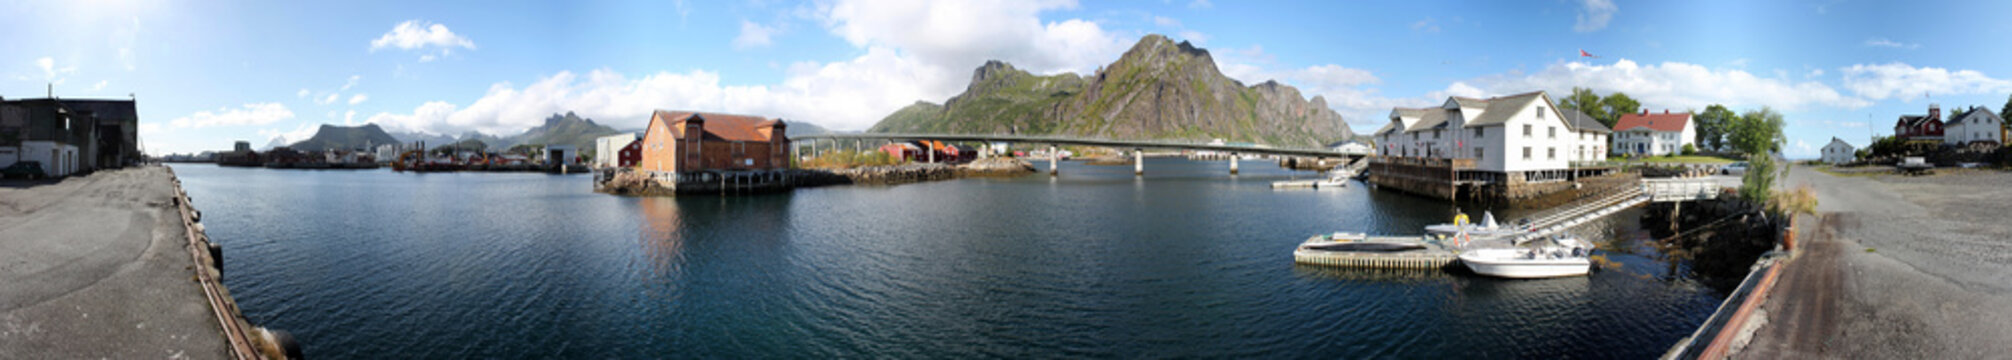 Panorama der Stadt Svolvaer mit Lagerhaus, Bucht und Brücke auf den Lofoten, Nordland, Norwegen